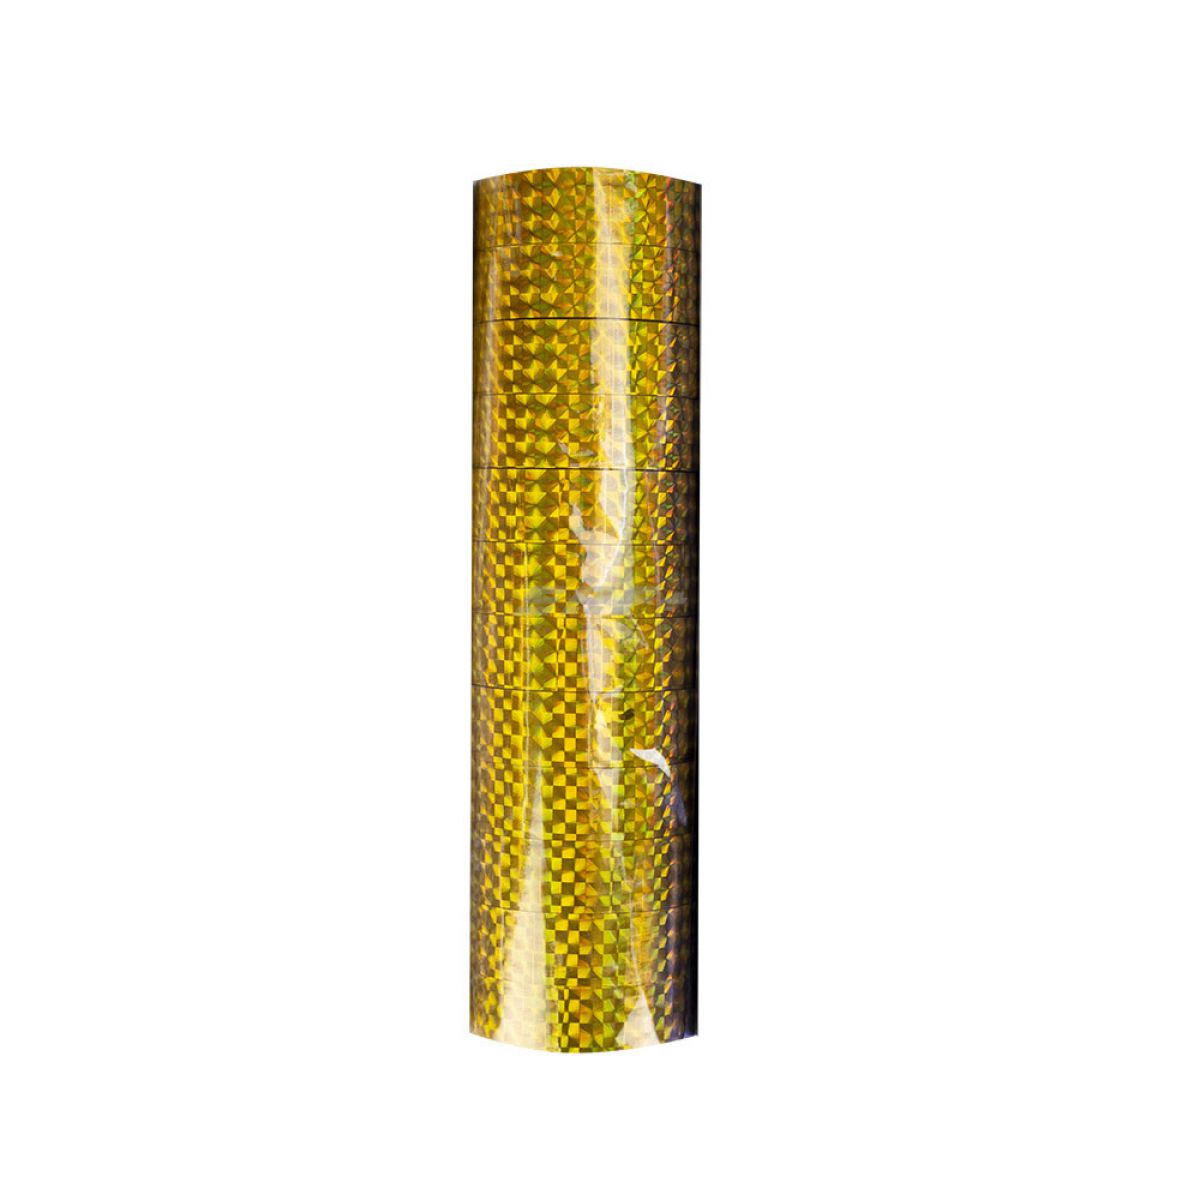 Обмотка для гимнастического обруча, арт.E135A-GOL, ширина 1,5см, длина 30м, золотистый